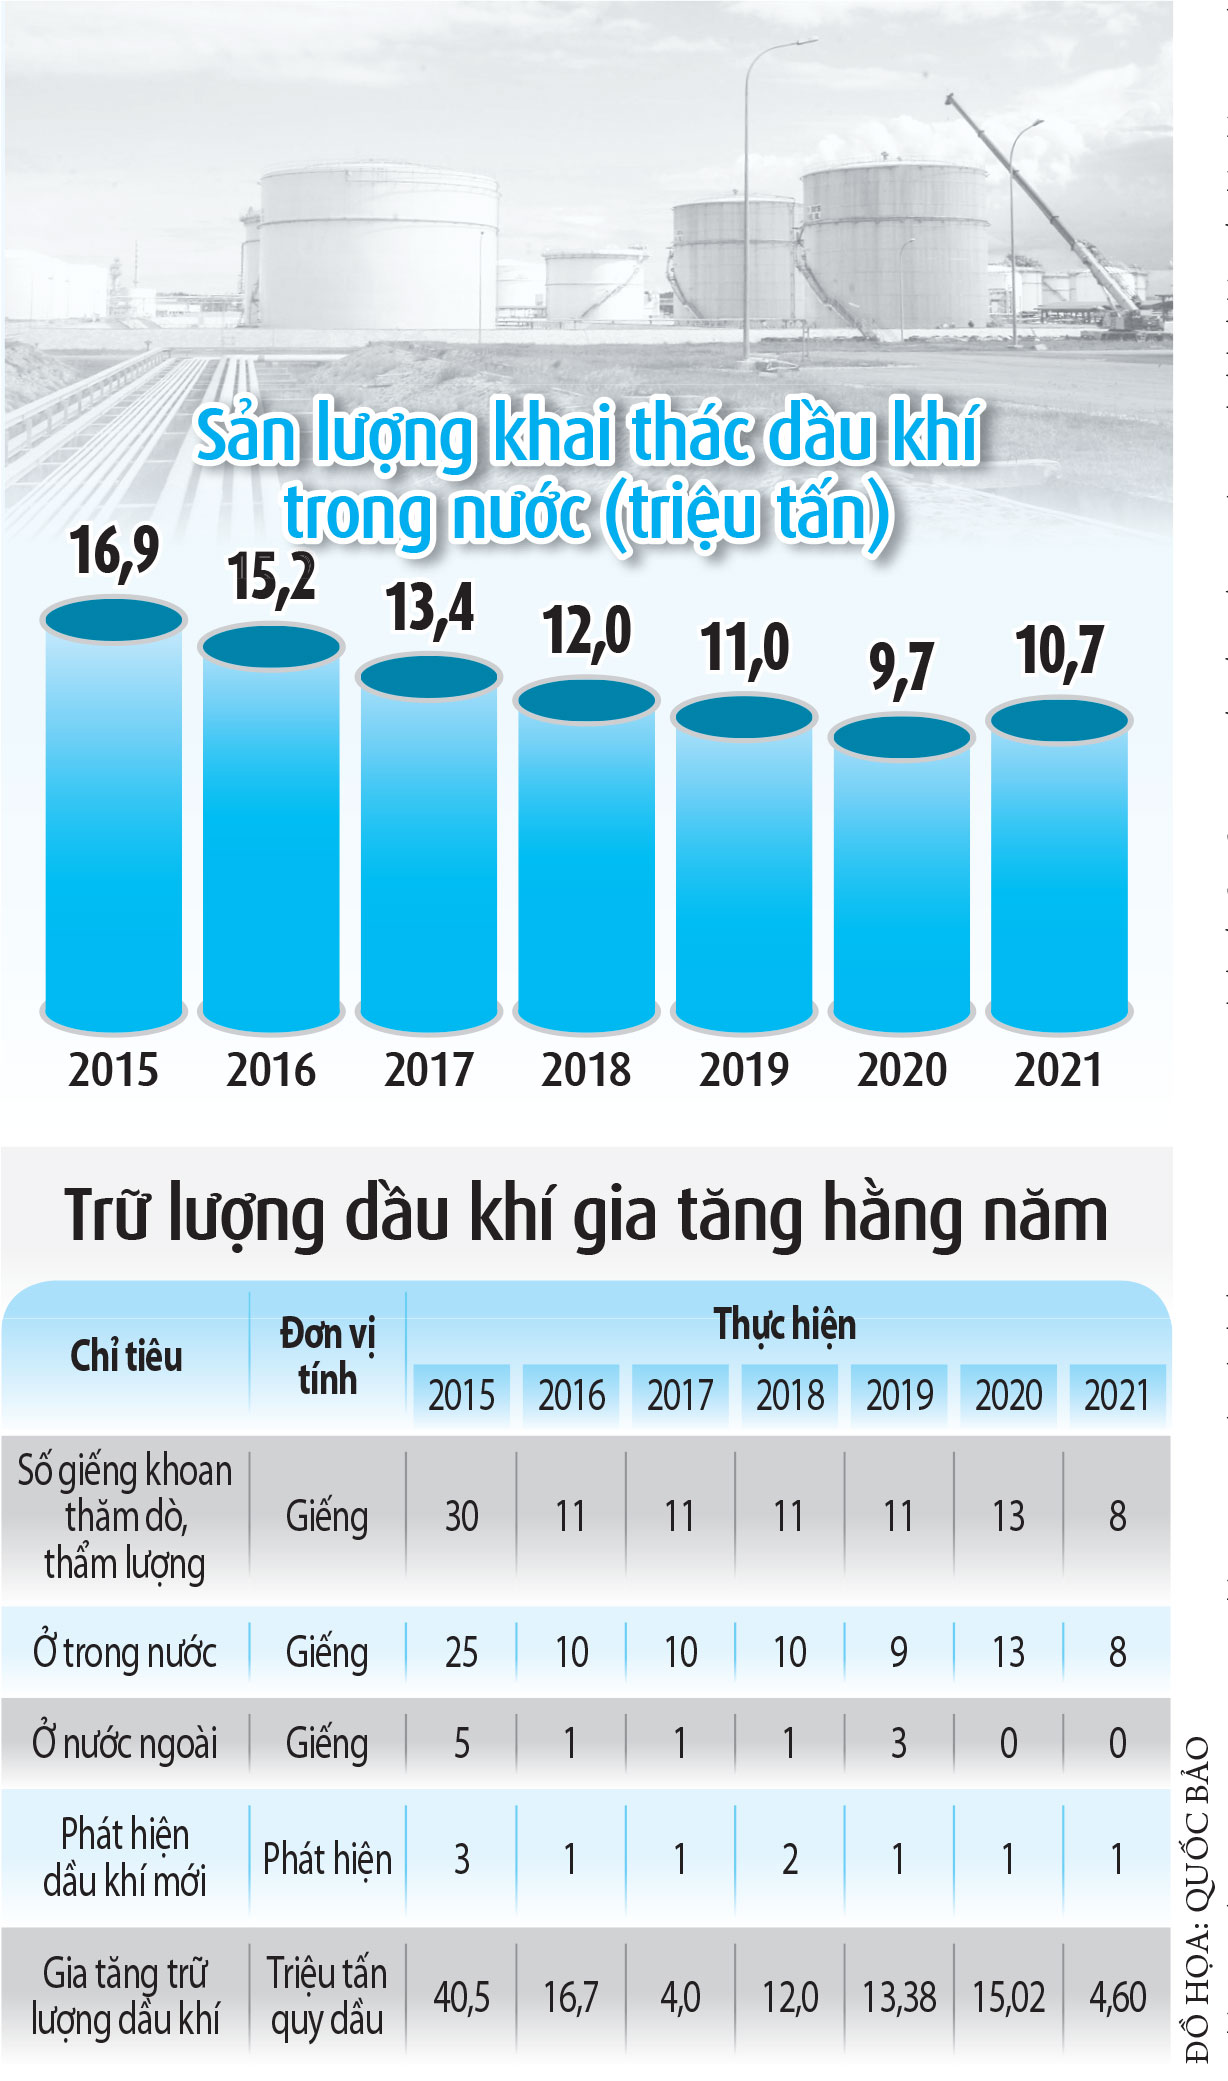 Singapore cắt giảm hoạt động lọc hóa dầu do ảnh hưởng của COVID19  Kinh  doanh  Vietnam VietnamPlus